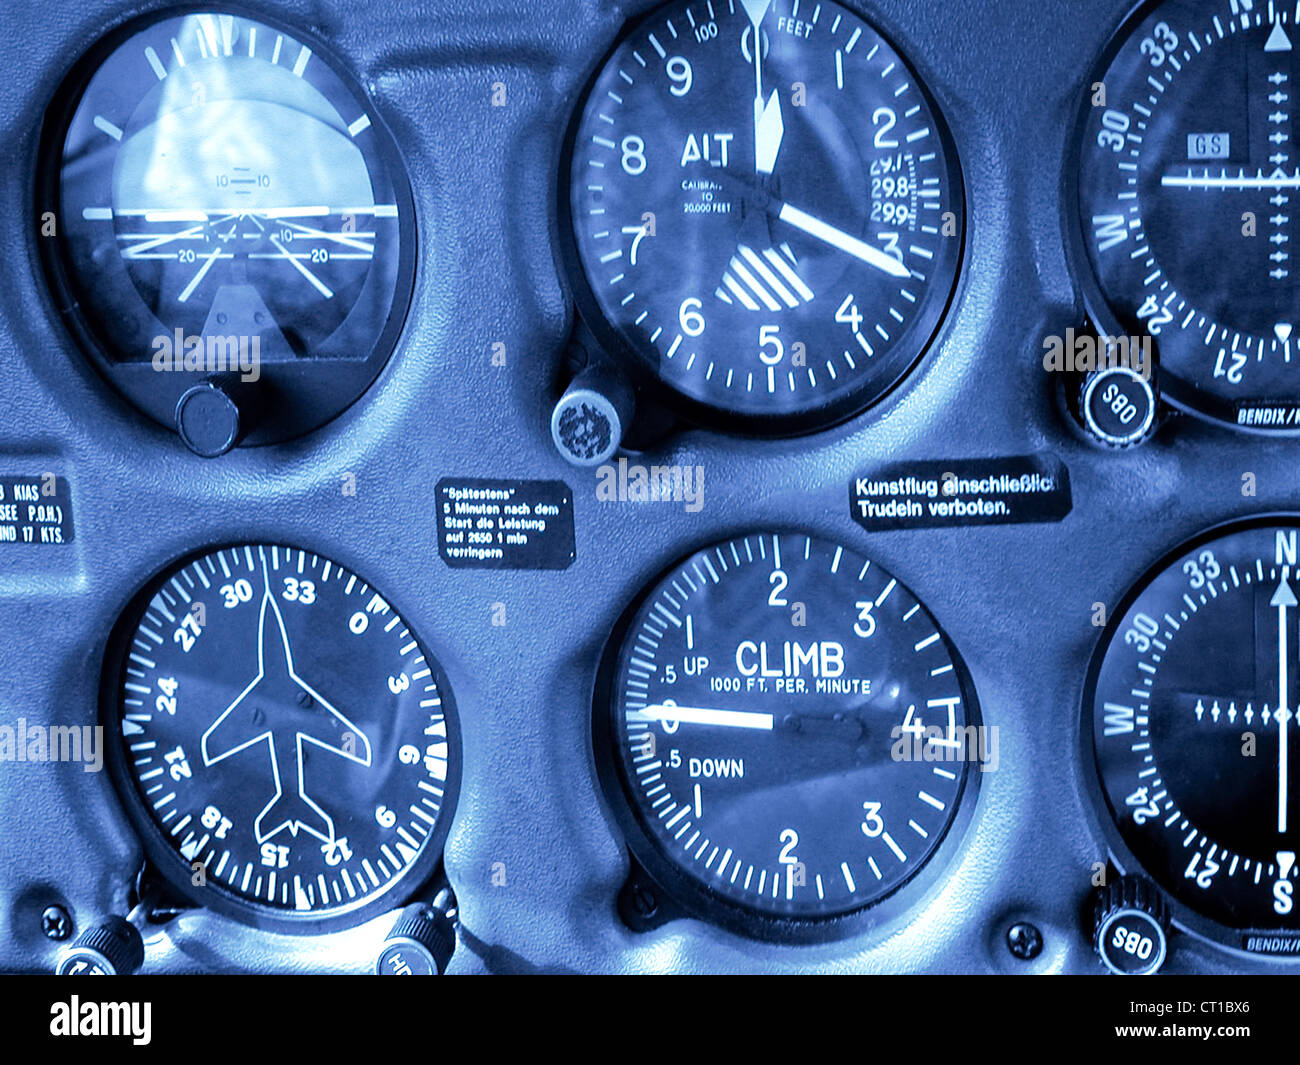 Flugzeuginstrumente im Cockpit eines Flugzeuges Stock Photo